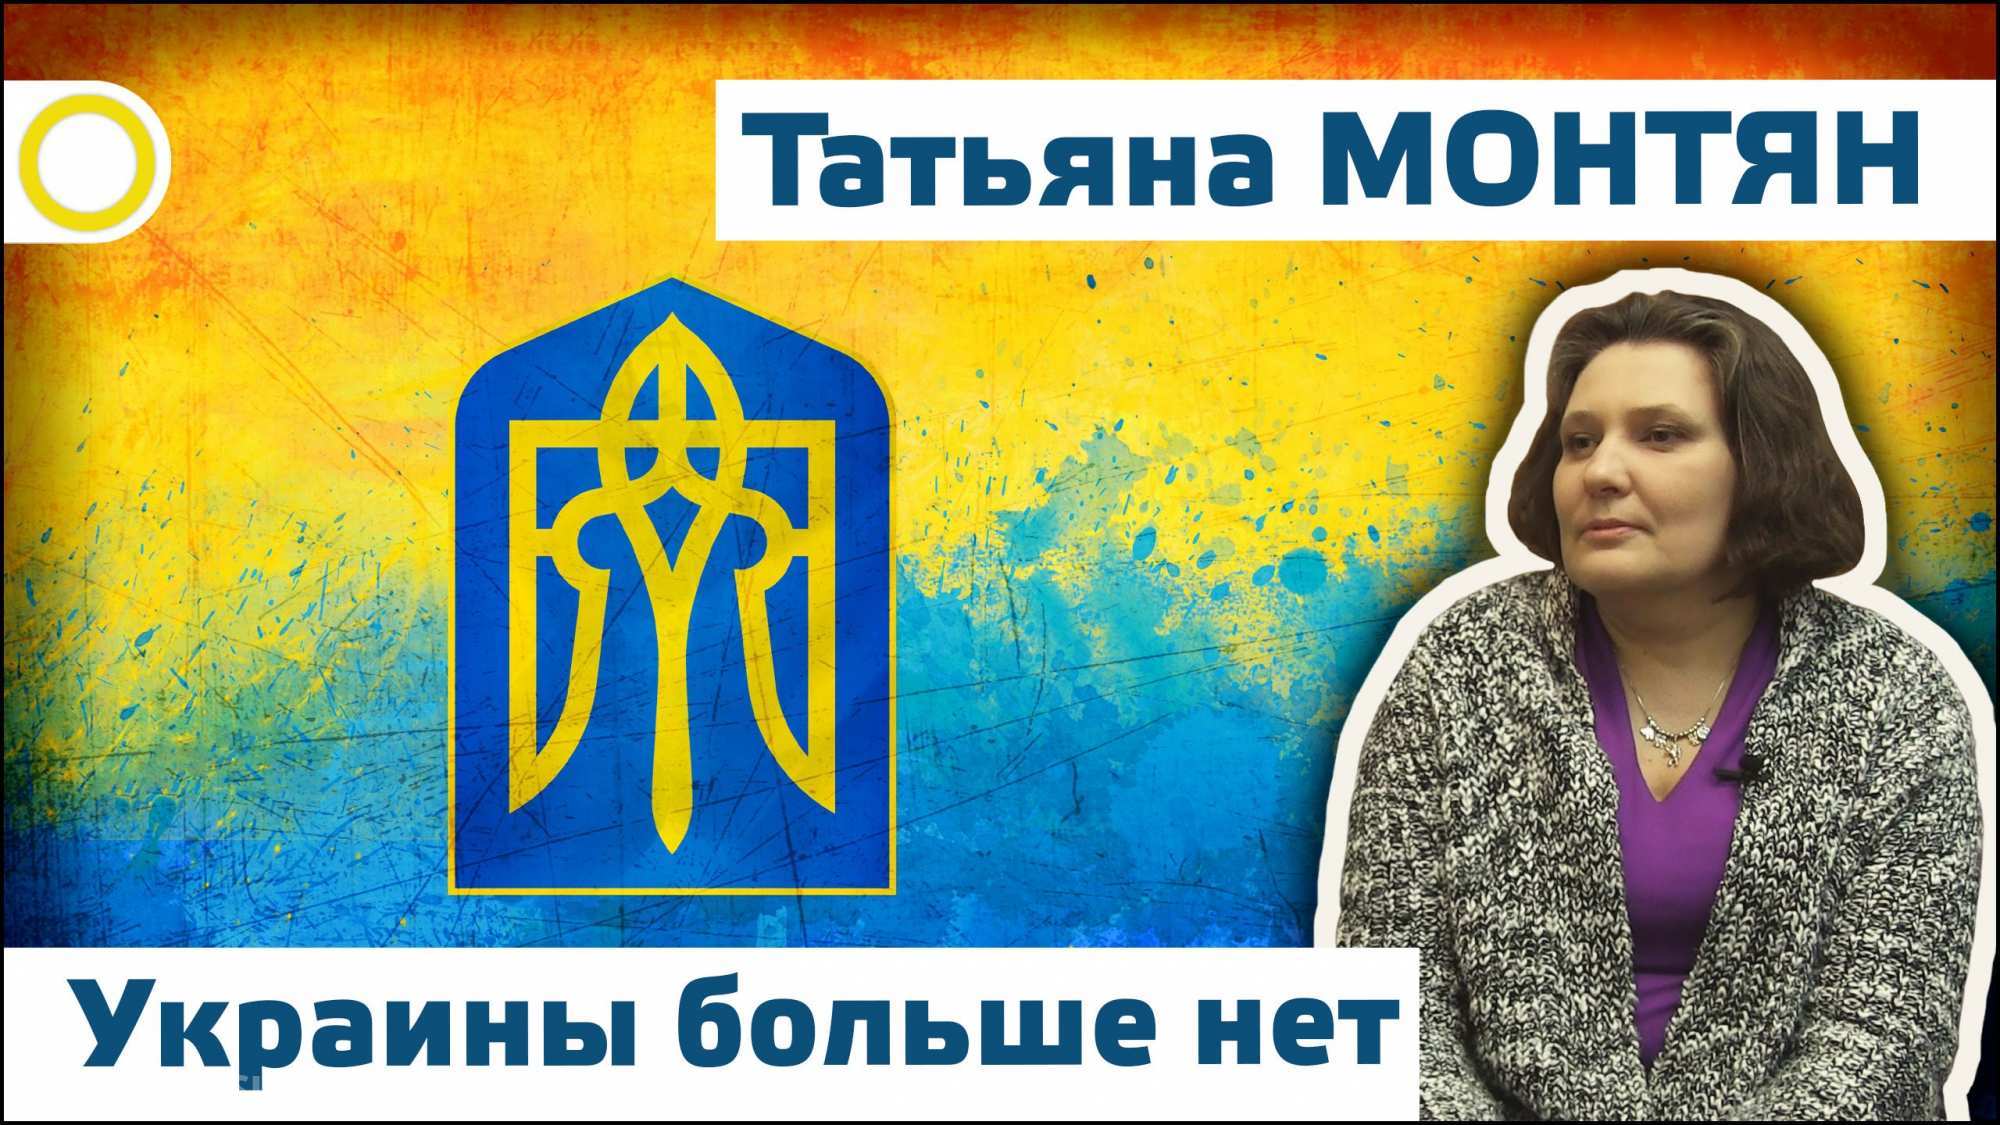 Покажите мне живого российского агрессора! — украинская правозащитница Монтян о «тупых тварях», устроивших блокаду (ВИДЕО)